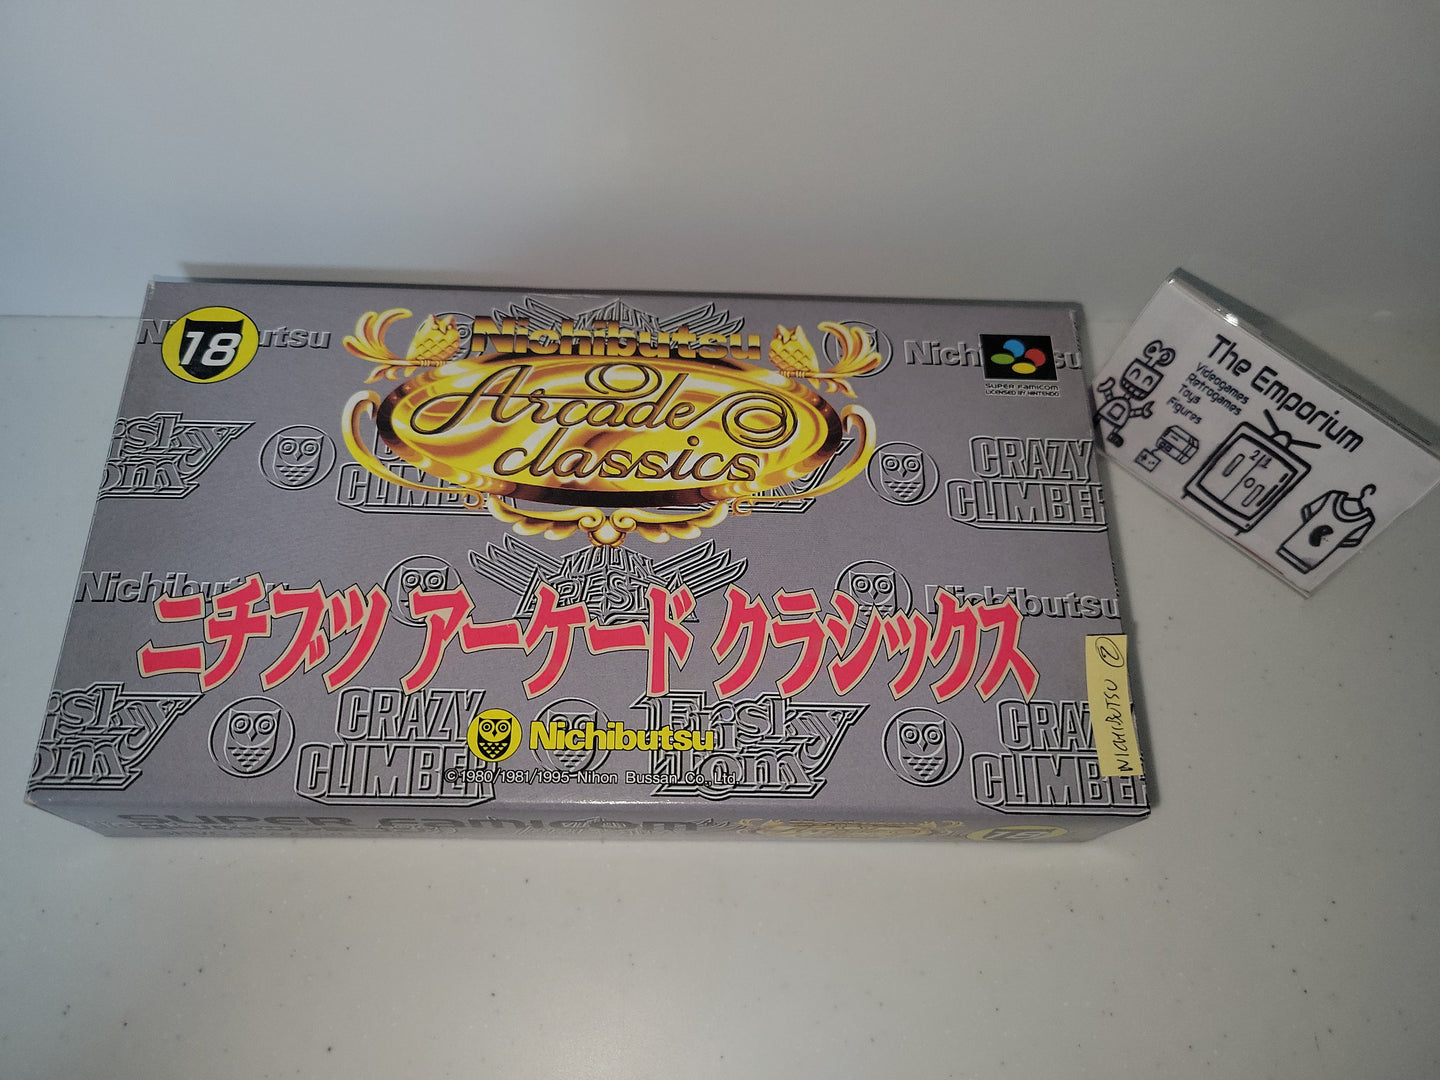 Nichibutsu Arcade Classics - Nintendo Sfc Super Famicom